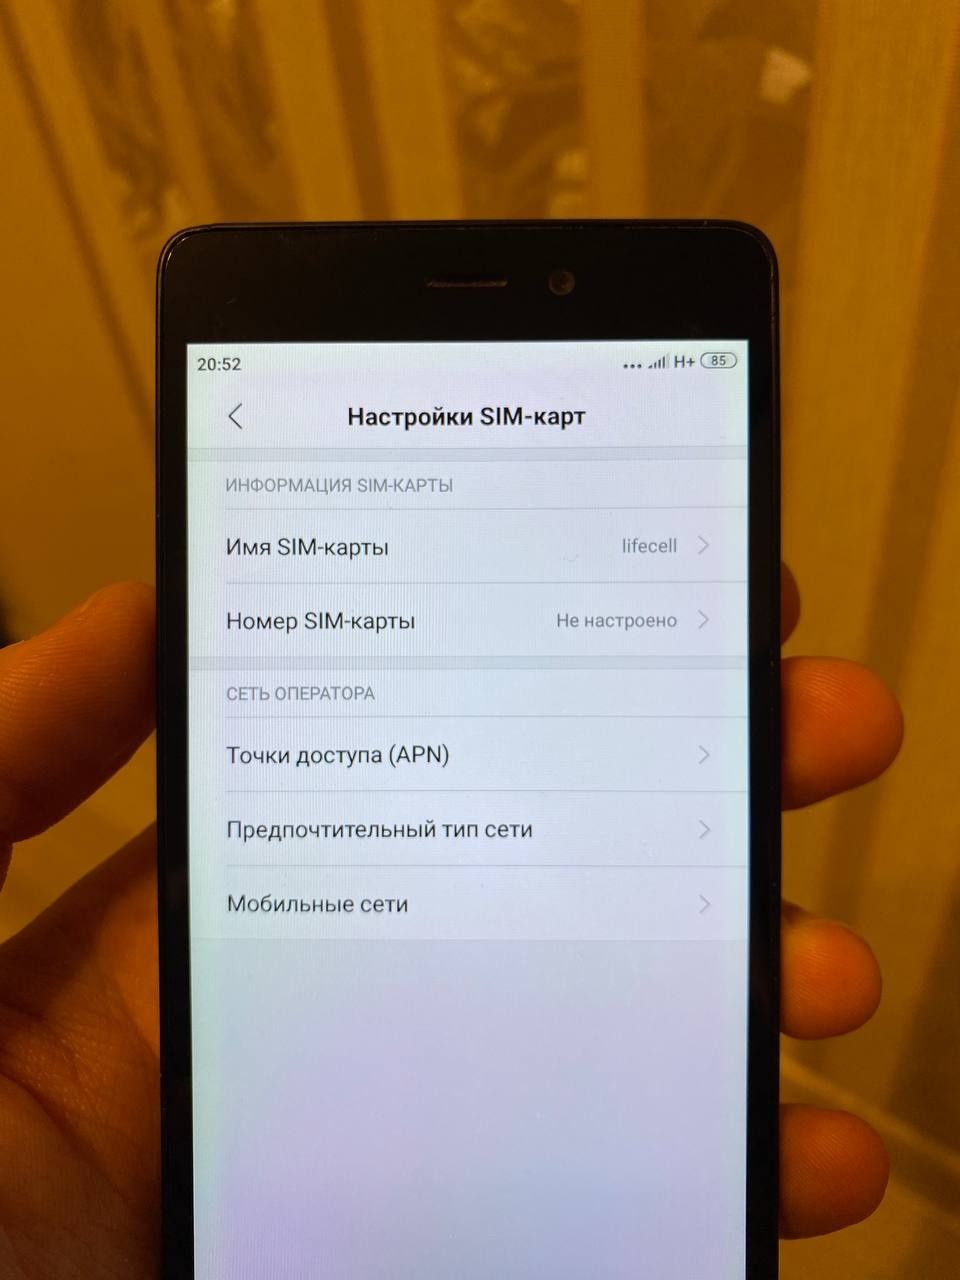 Xiaomi Redmi 3s, Телефон Смартфон, сяоми редми, ксиоми